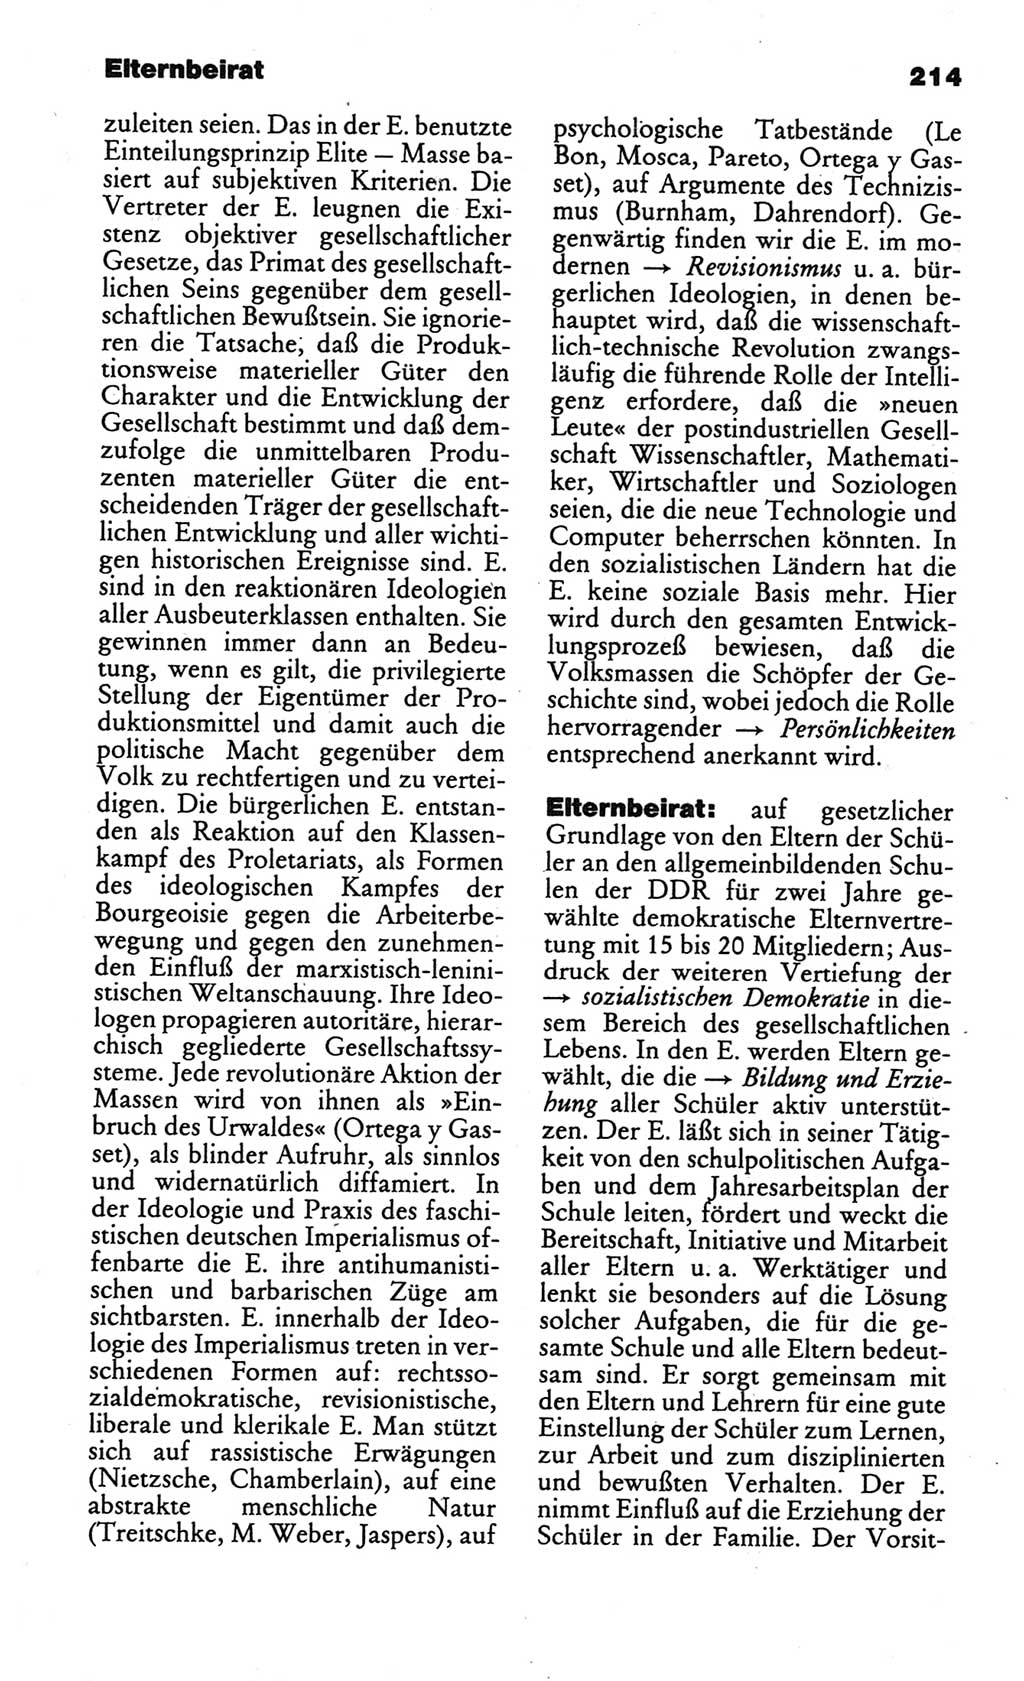 Kleines politisches Wörterbuch [Deutsche Demokratische Republik (DDR)] 1986, Seite 214 (Kl. pol. Wb. DDR 1986, S. 214)